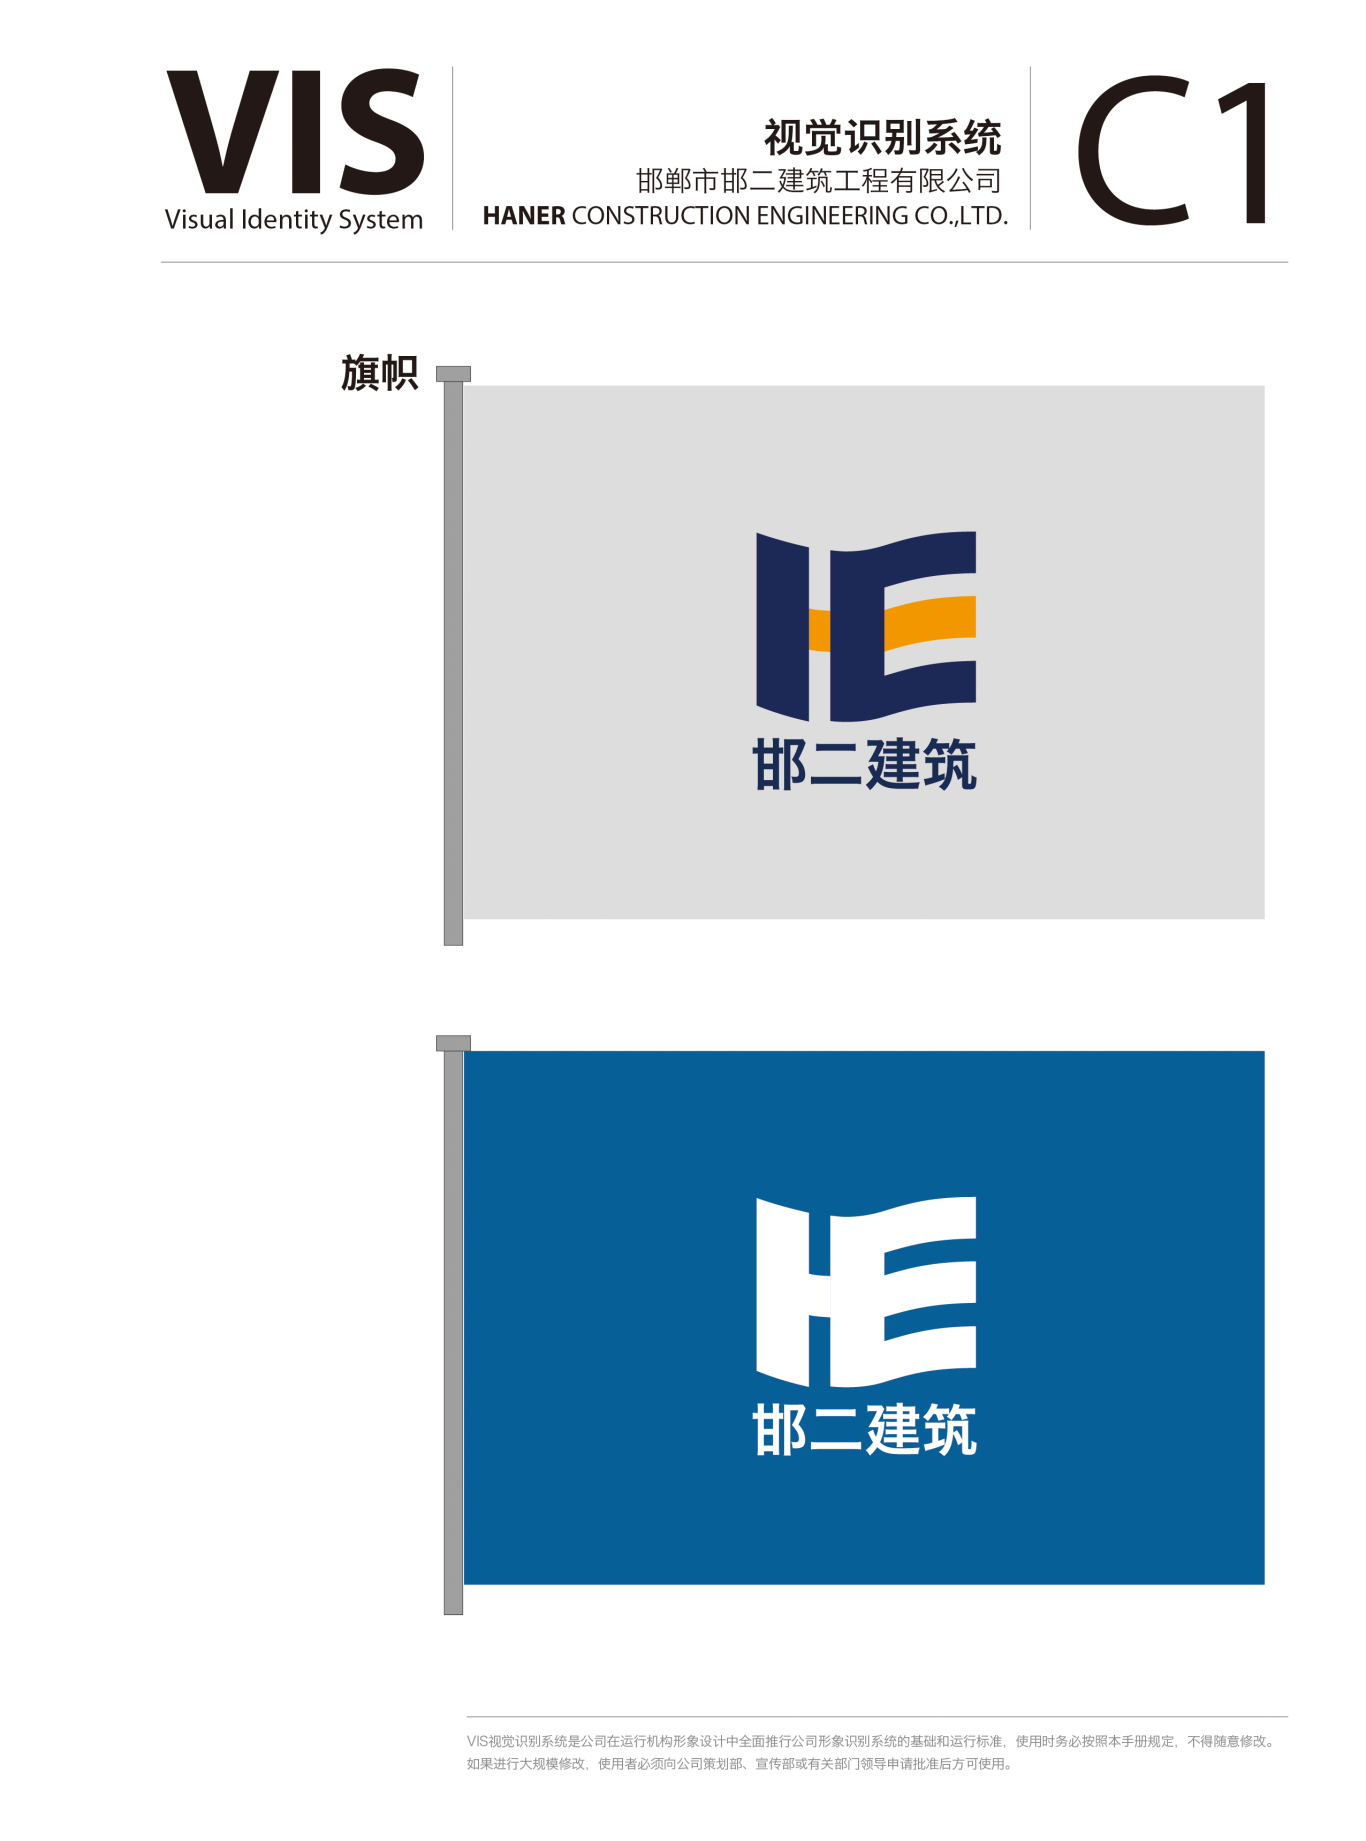 邯郸第二建筑有限公司logo 及 VIS图15